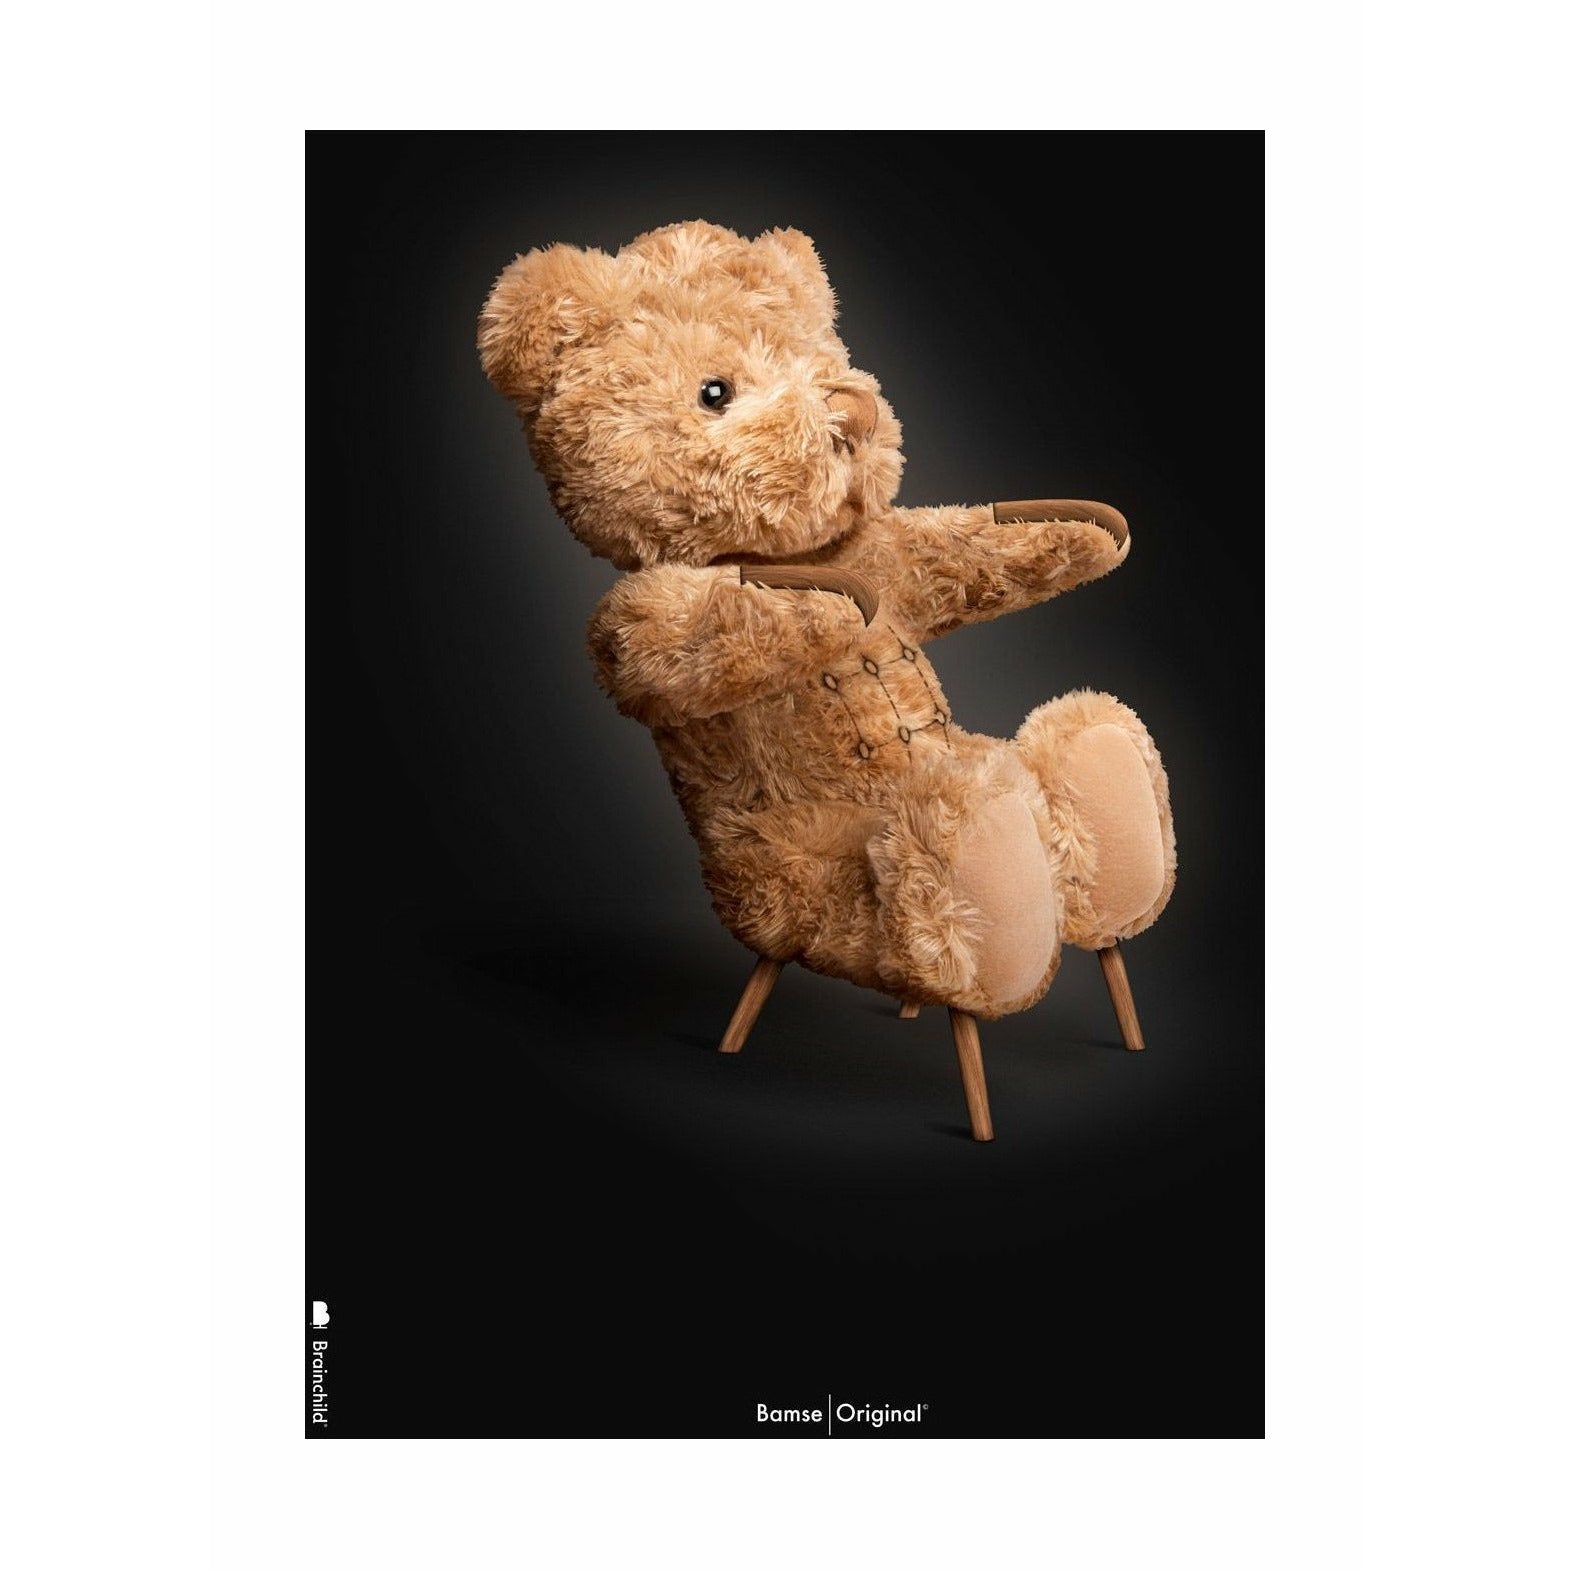 brainchild Teddybeer klassieke poster zonder frame A5, zwarte achtergrond